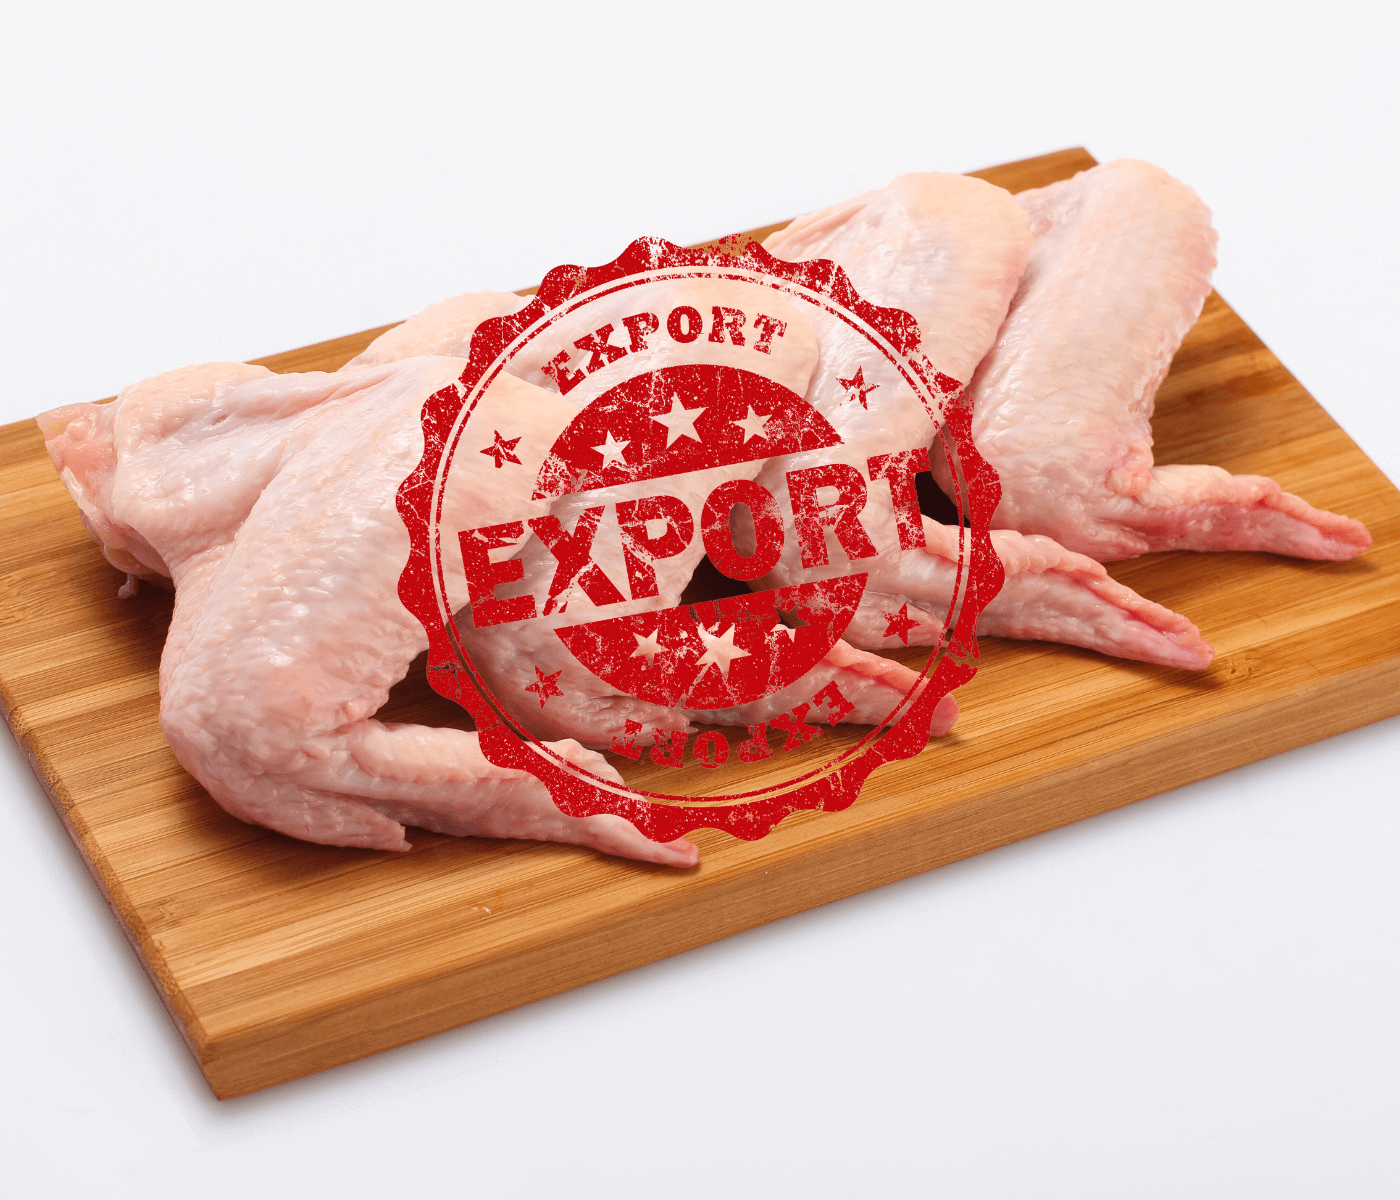 Exportação de frango é recorde mesmo com desaceleração da China